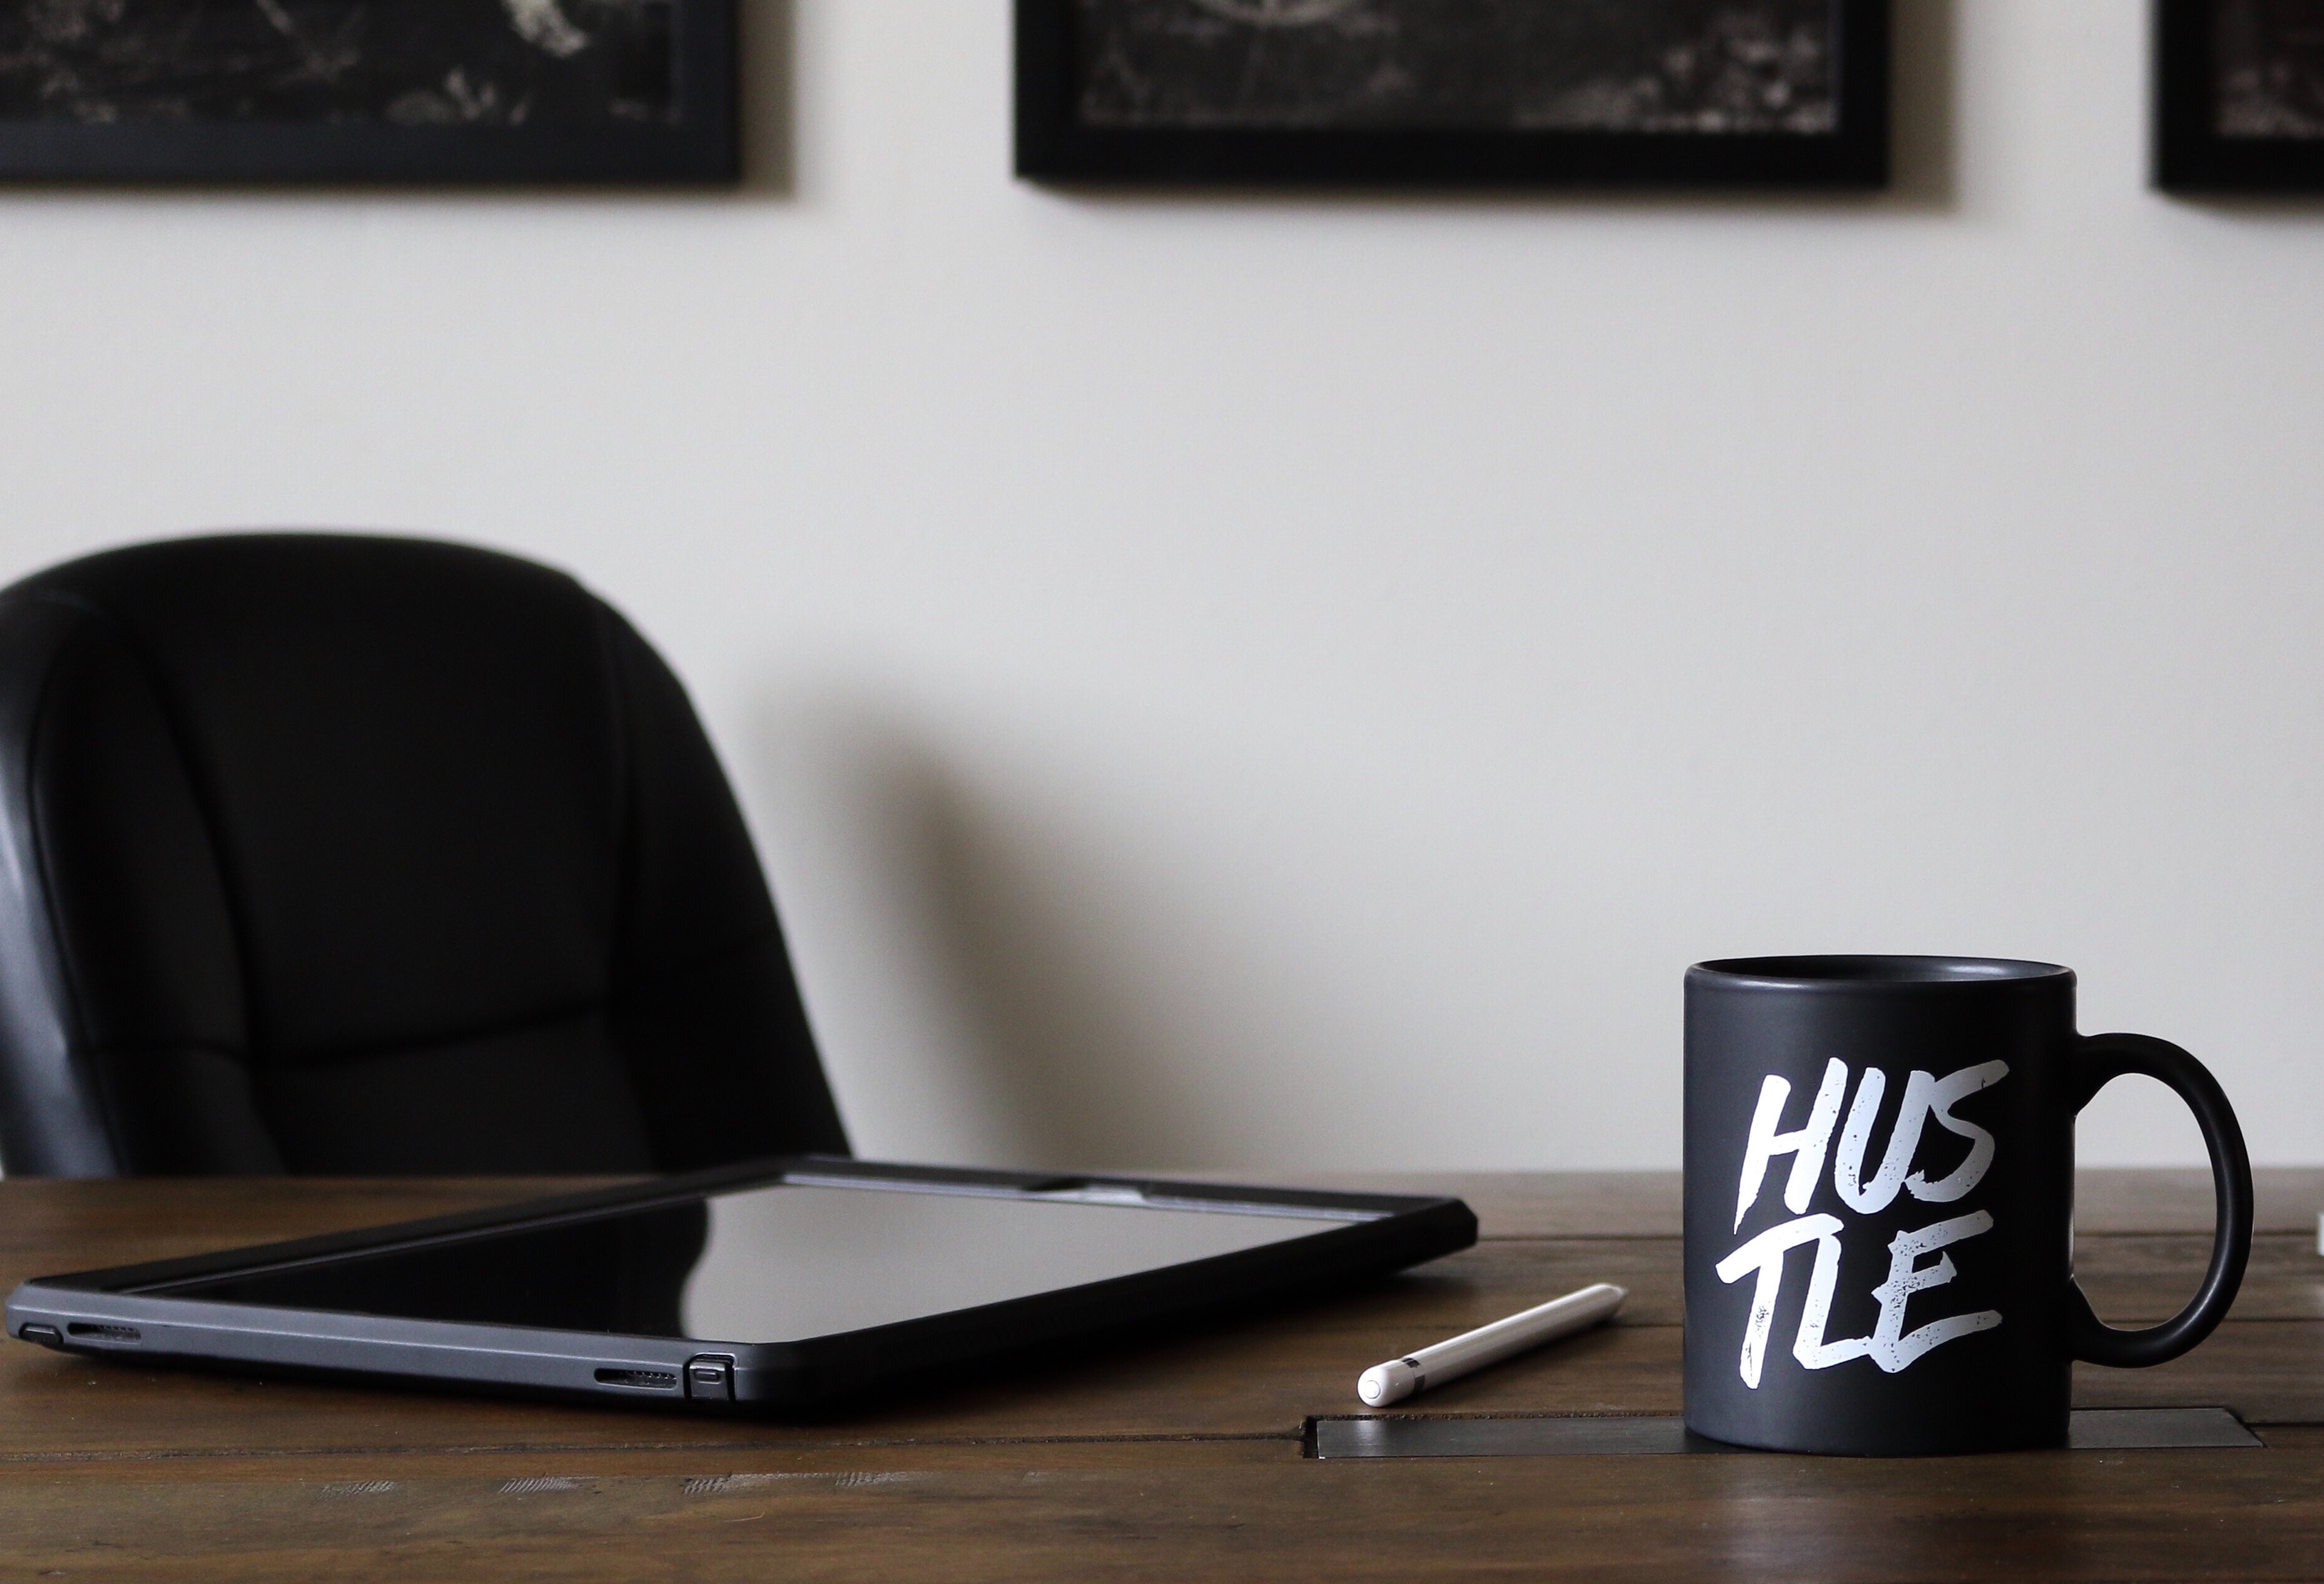 'Hustle' mug on desk with tablet